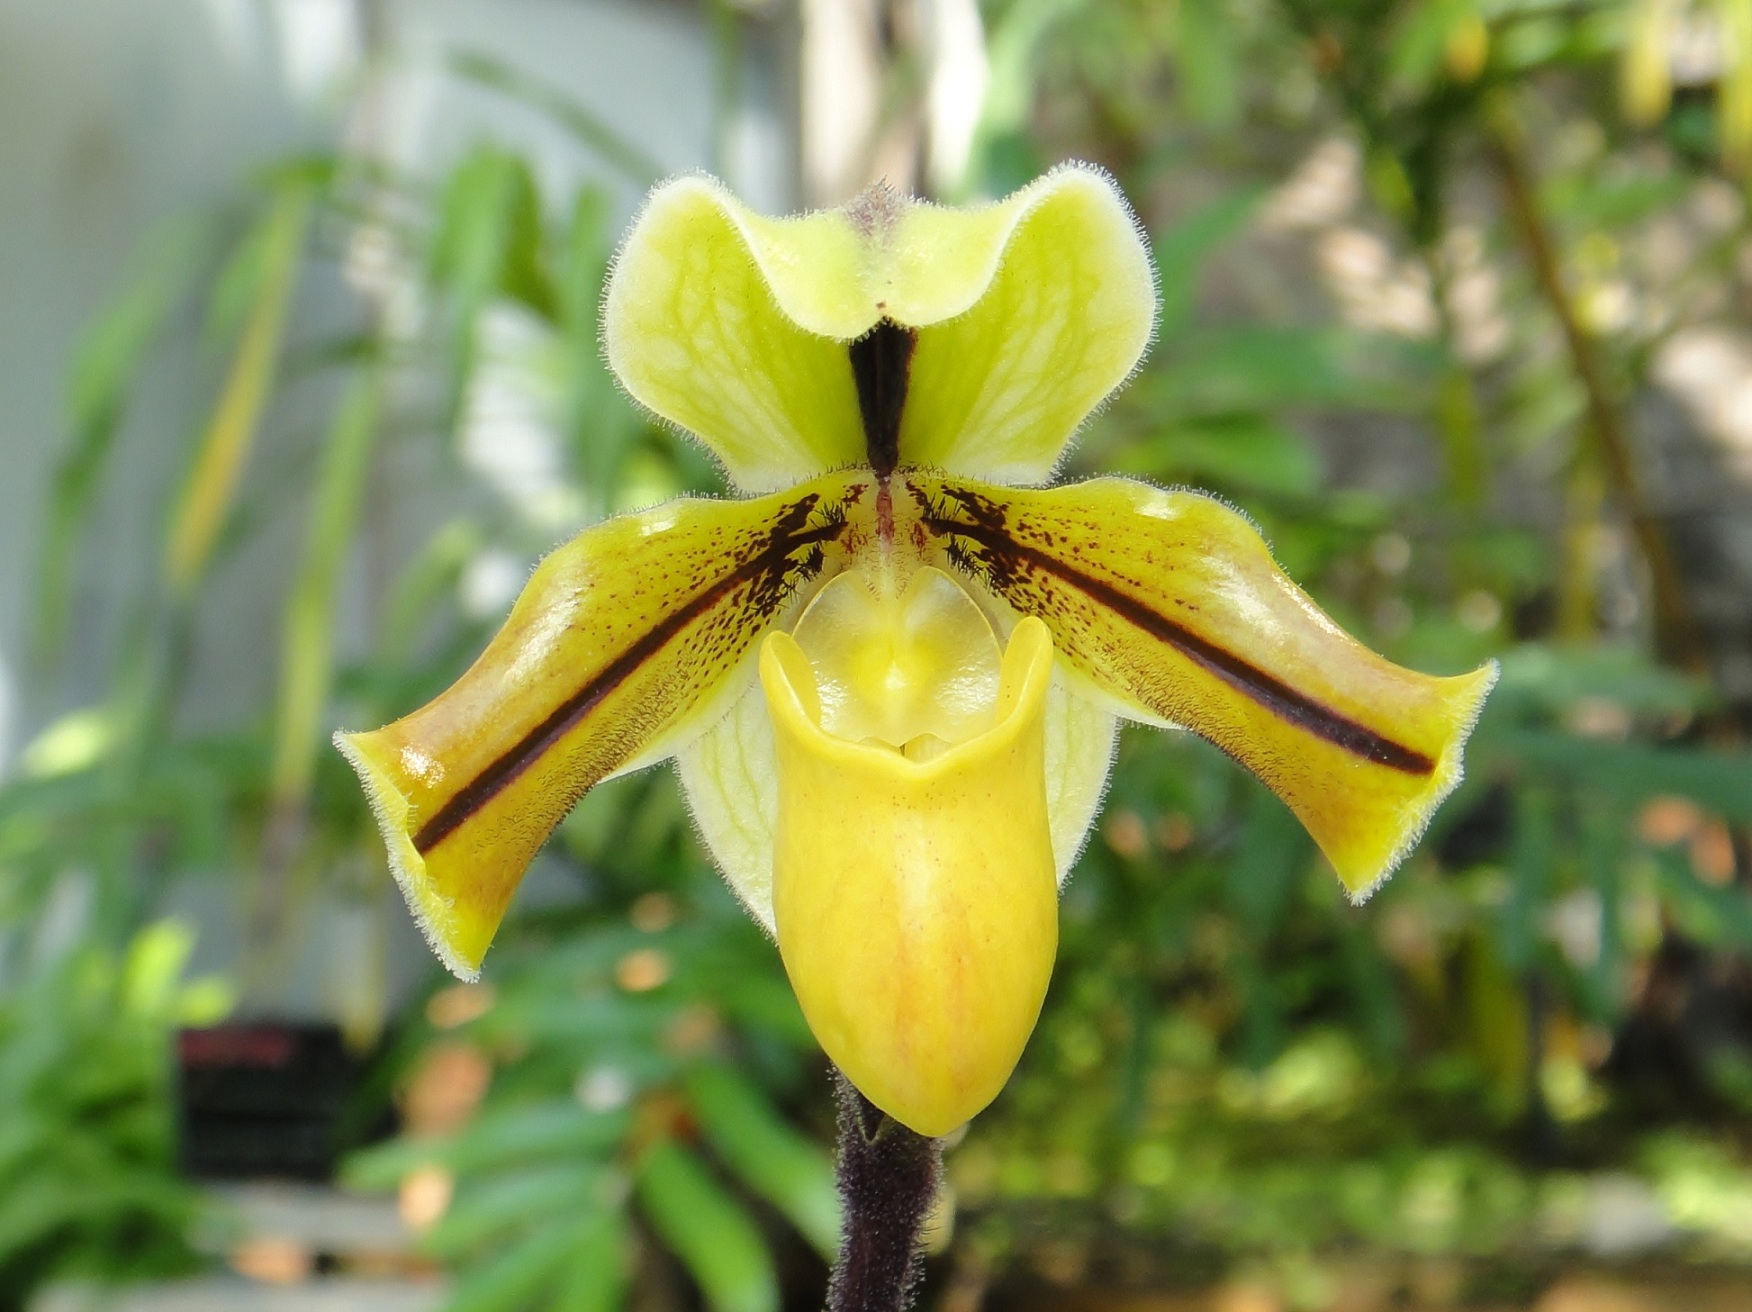 http://orchids.la.coocan.jp/Paphiopedilum/Paphiopedilum%20druryi/DSC03620.JPG